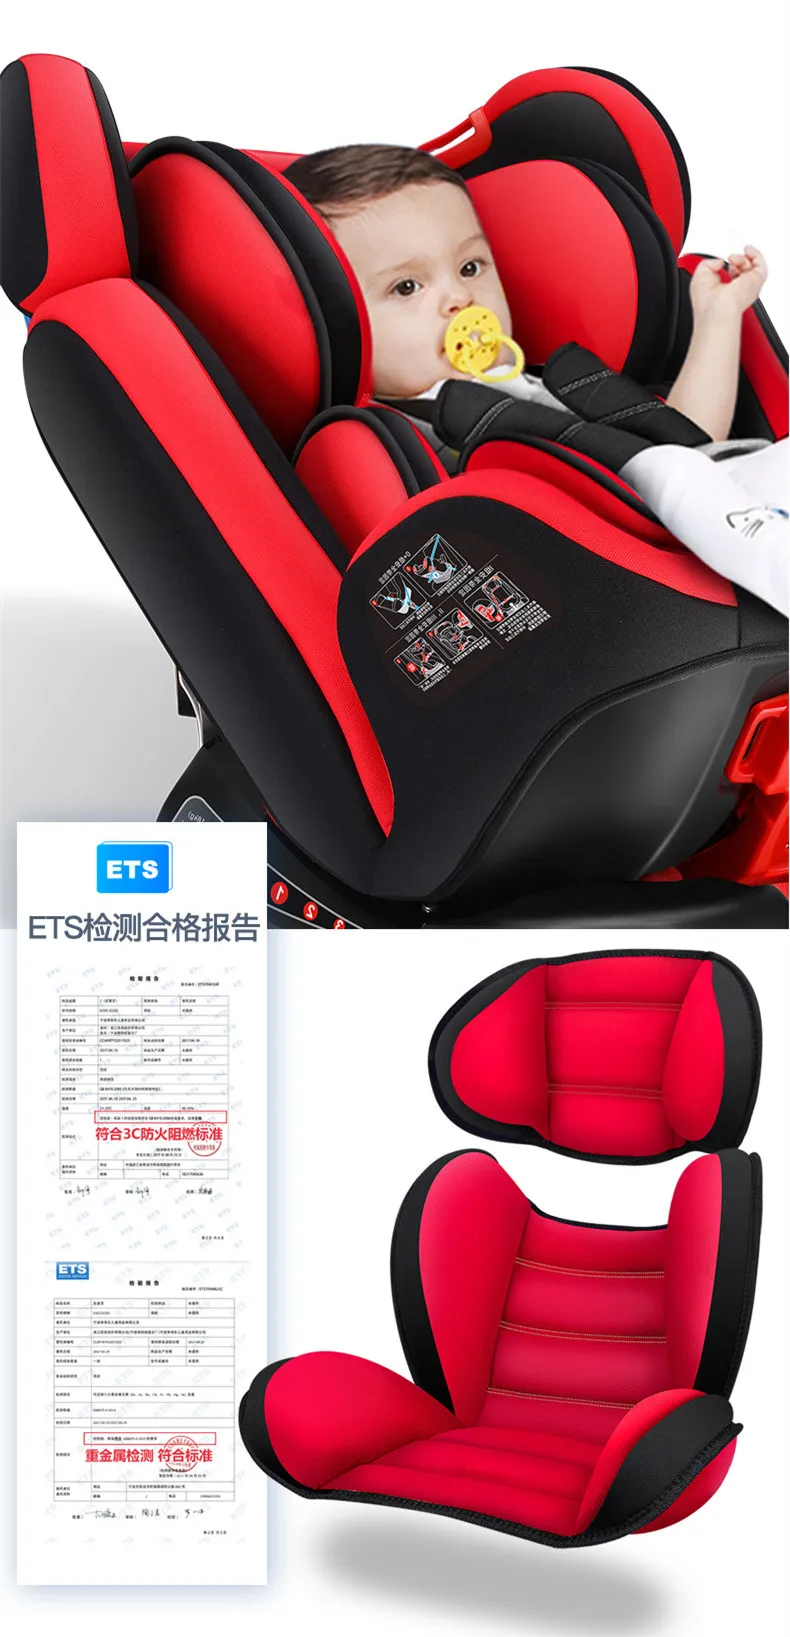 Автомобильные детские безопасные сиденья для детей от 0 до 12 лет ISOFIX жесткий интерфейс Дети Безопасность стул может сидеть и лежать Регулируемый 165 градусов